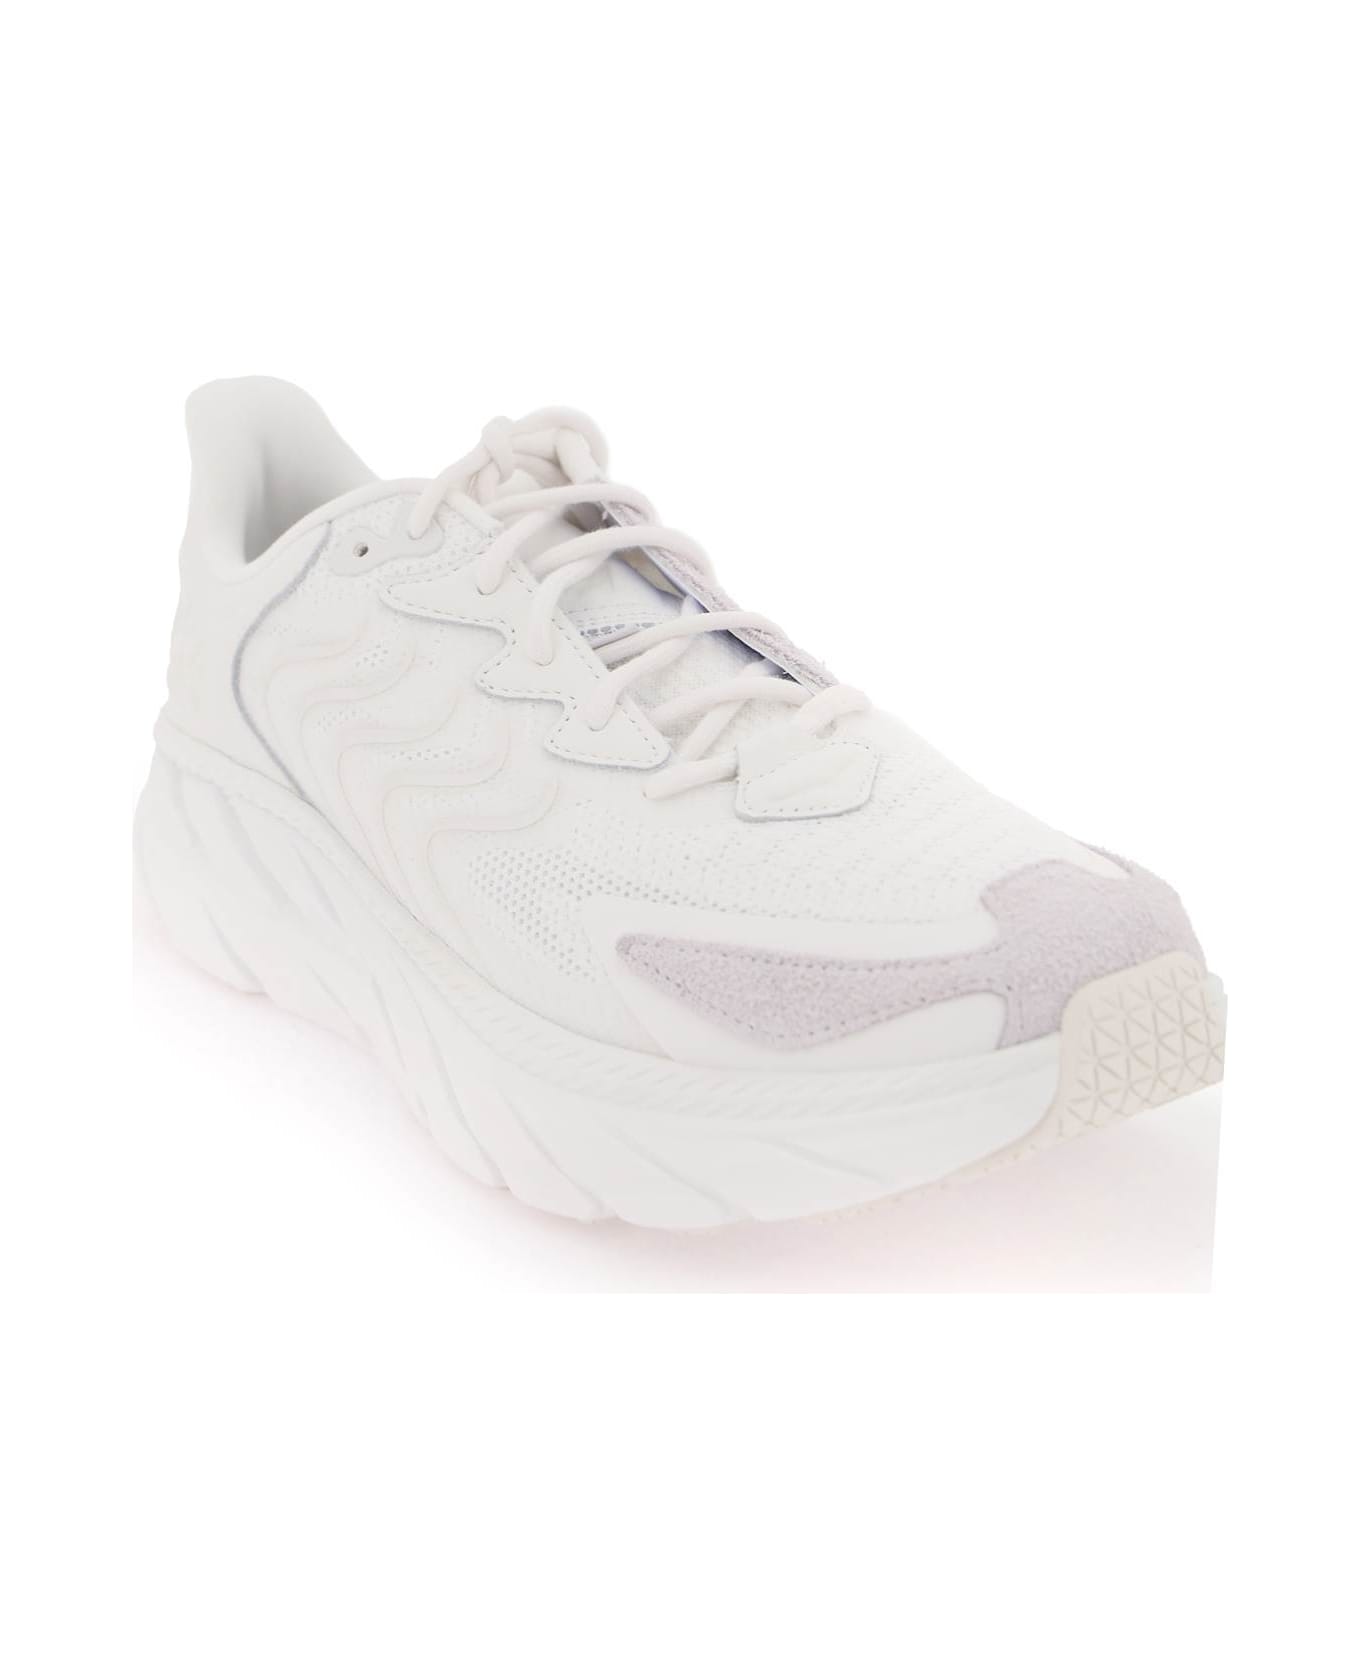 Hoka Clifton Ls Sneakers - WHITE NIMBUS CLOUD (White)